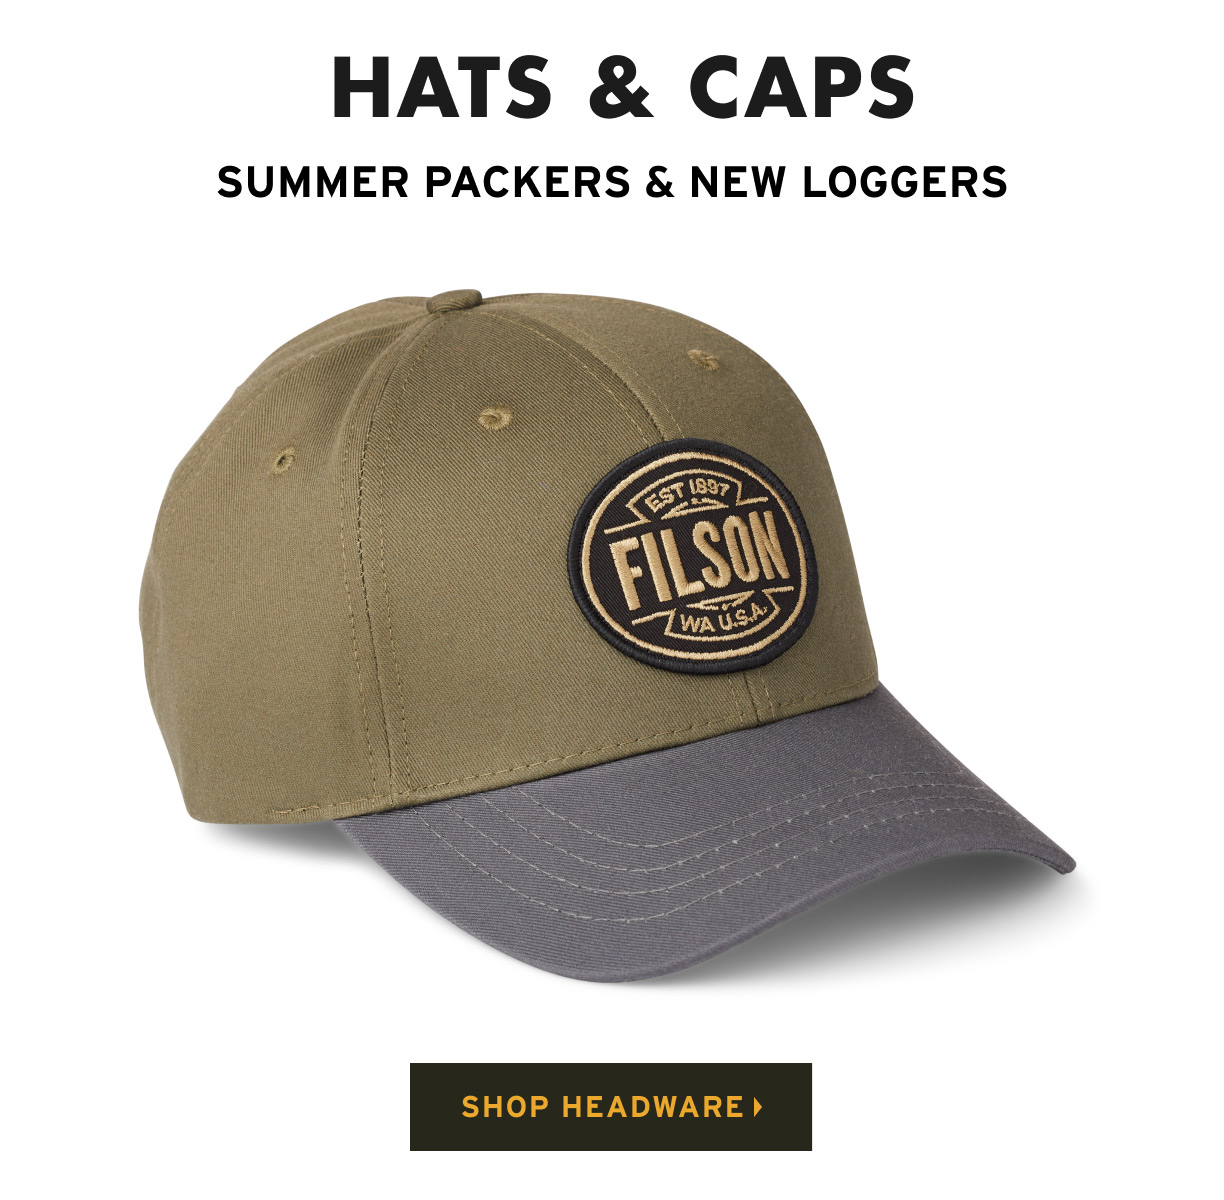 SHOP HATS & CAPS